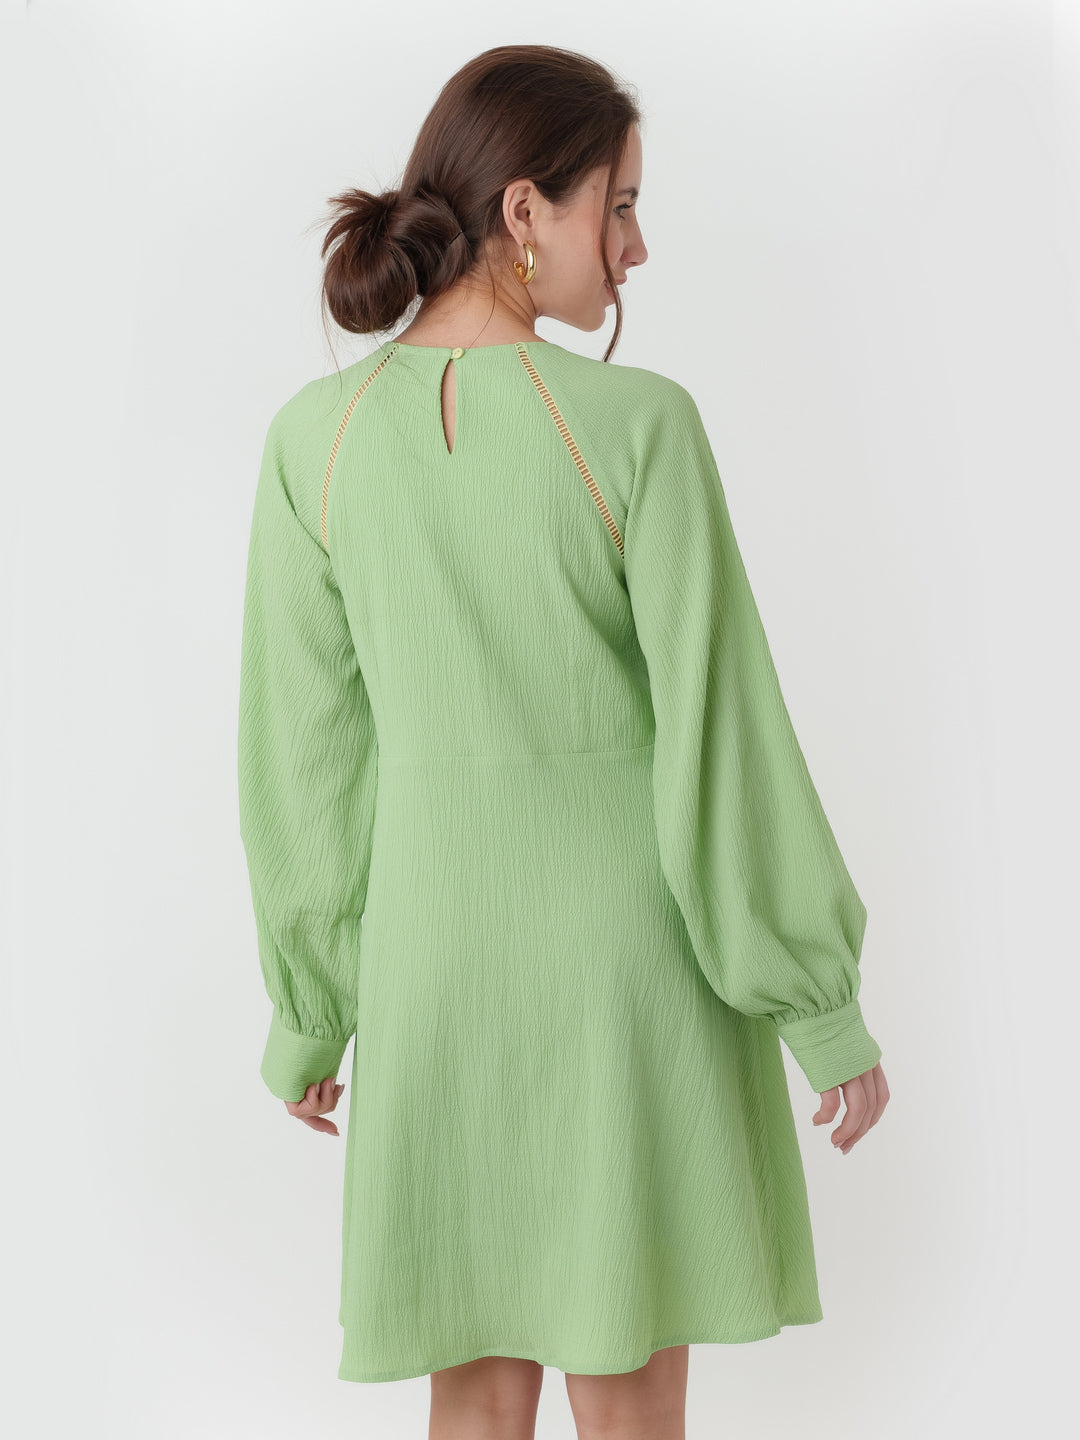 Green_Textured_Regular_Short_Dress_4